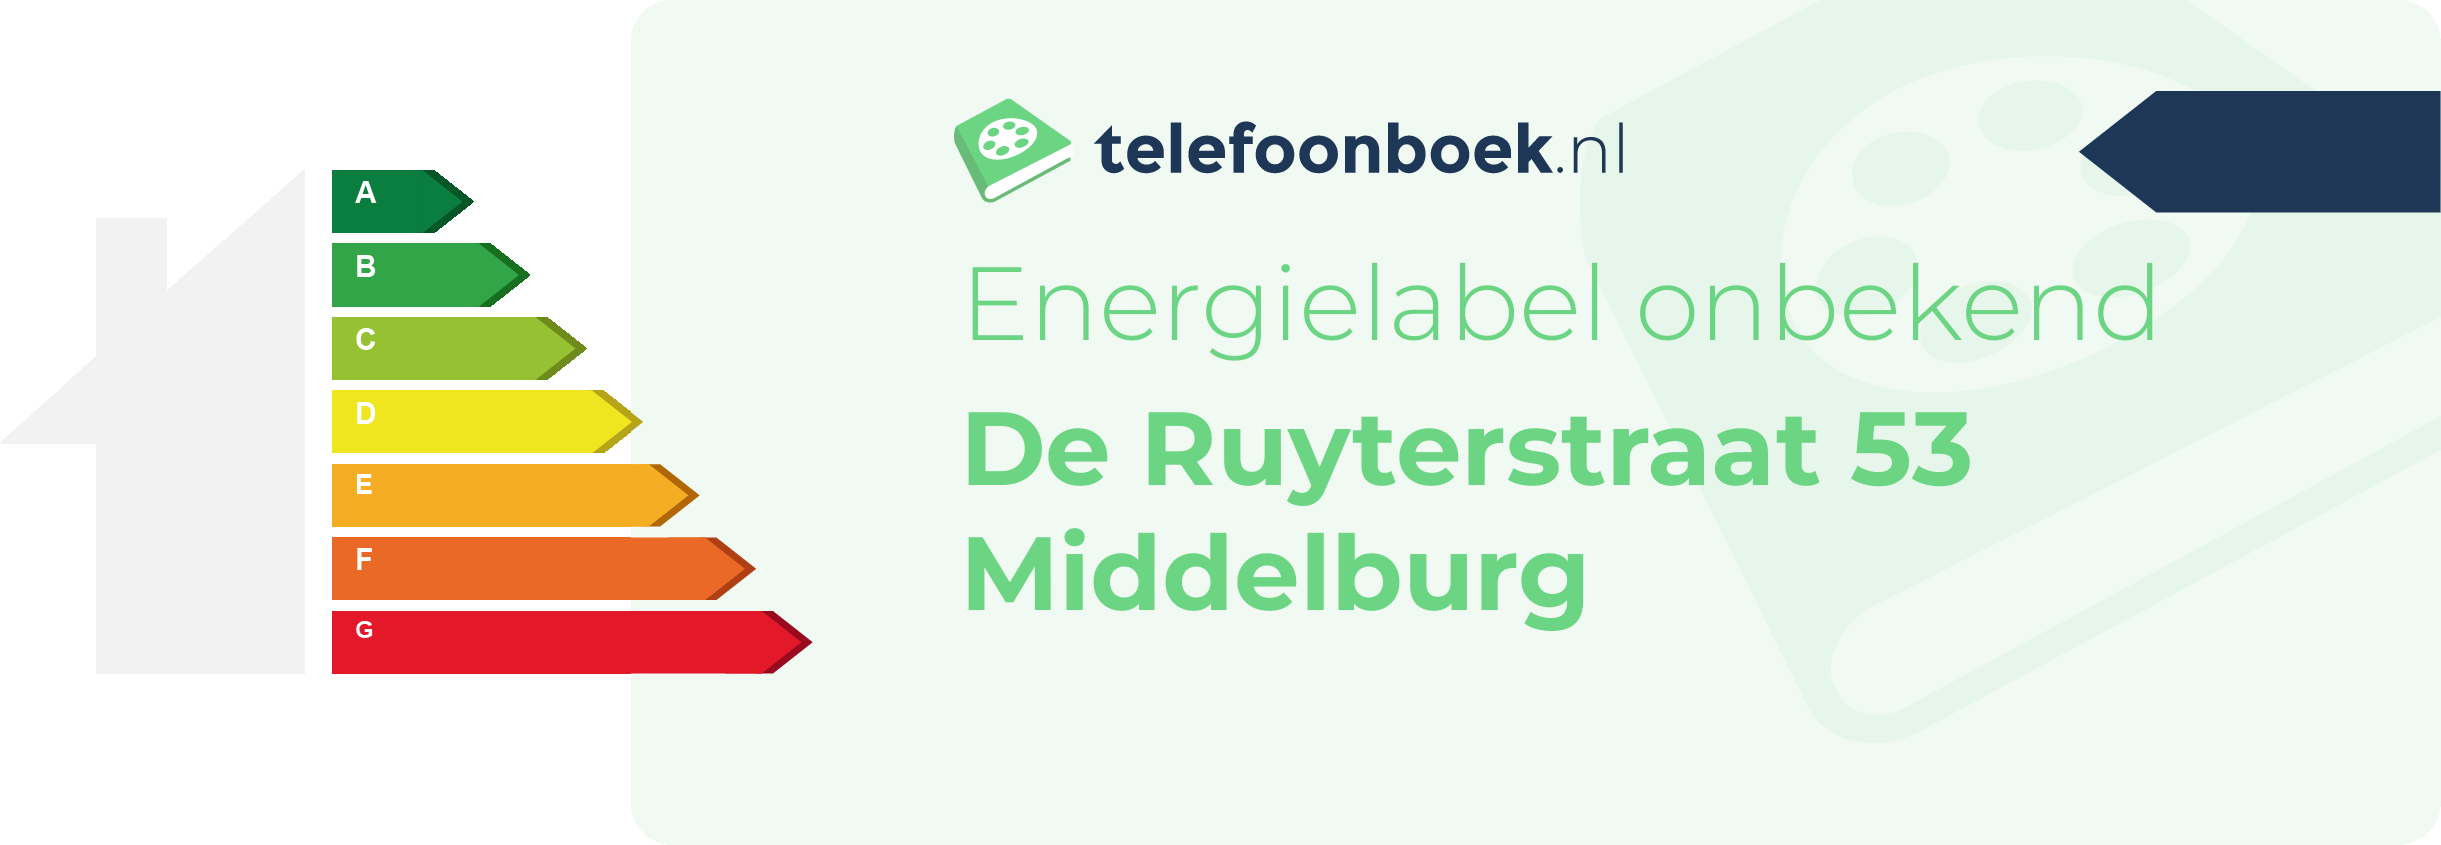 Energielabel De Ruyterstraat 53 Middelburg